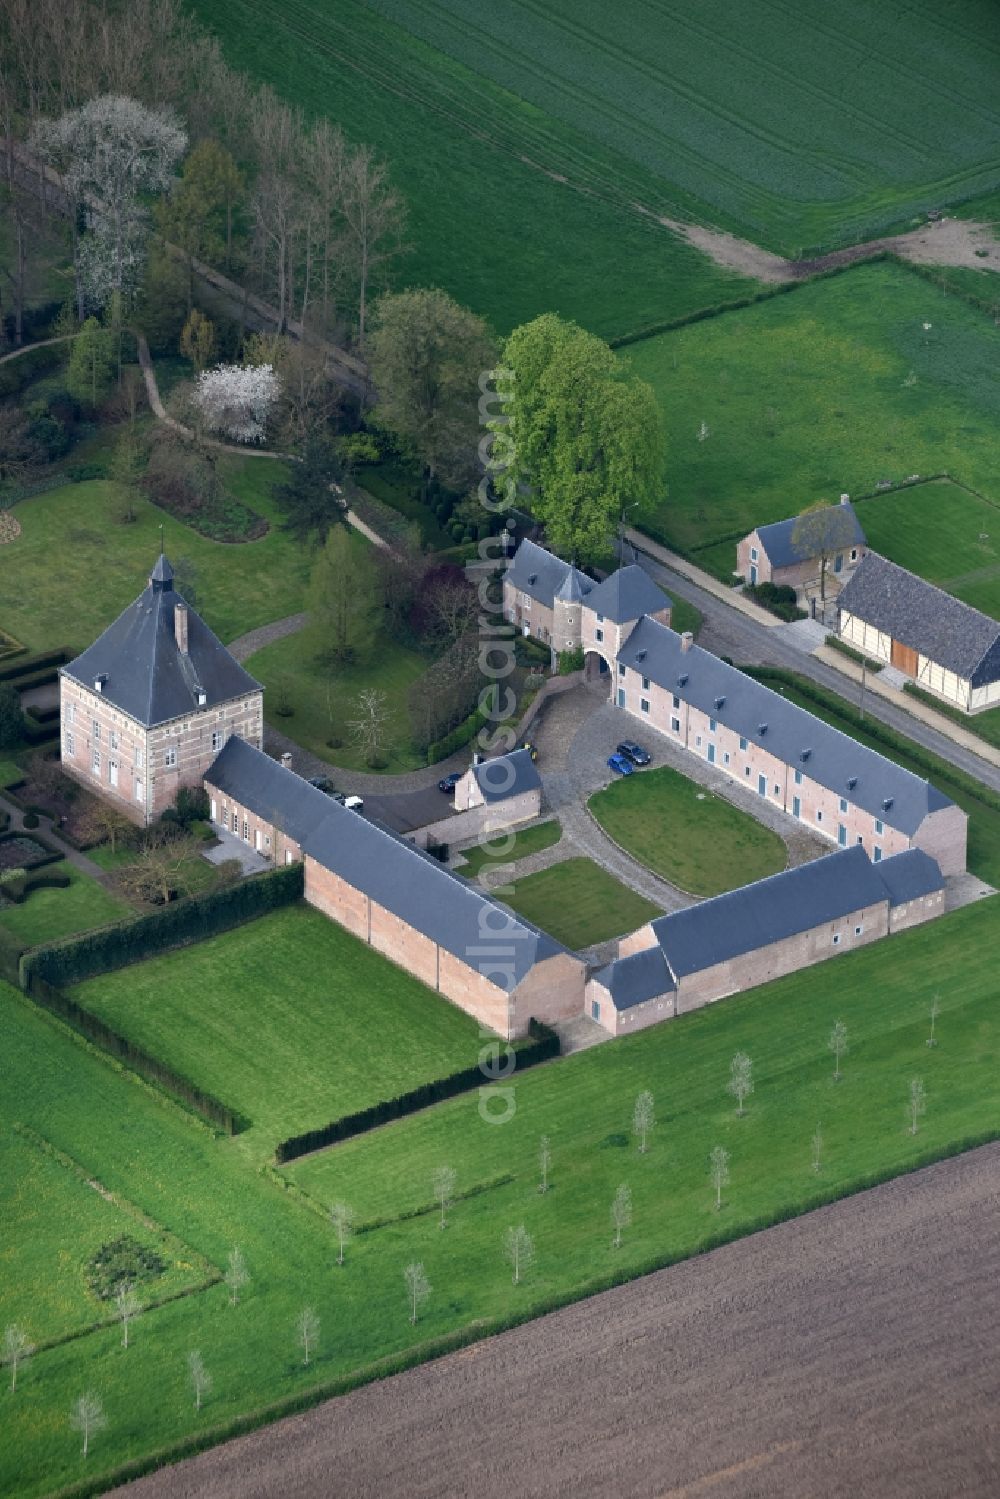 Aerial image Kortessem - Palace Printhagendreef in Kortessem in Vlaan deren, Belgium